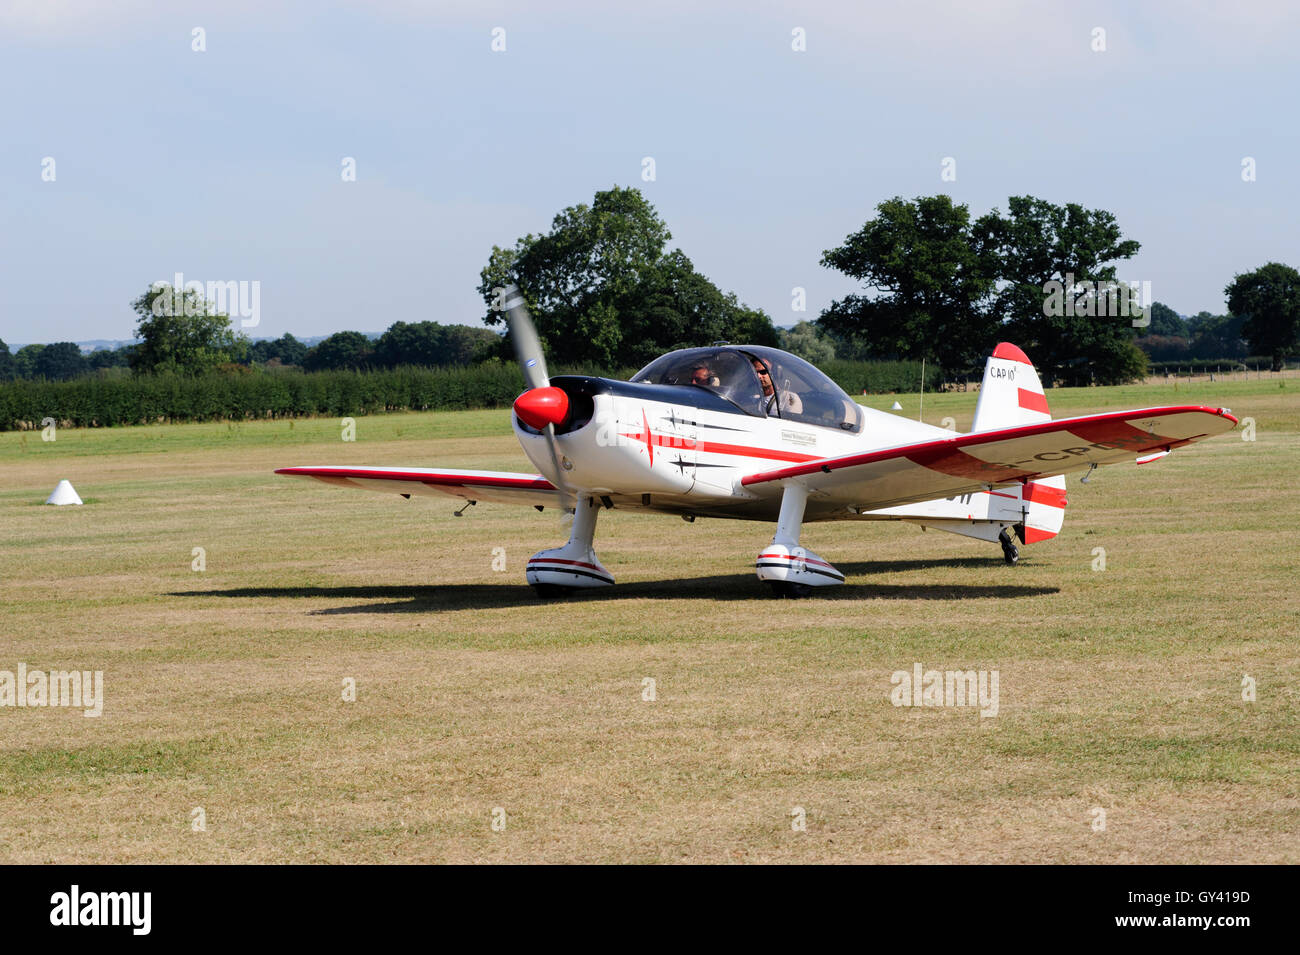 Le roulage des avions légers à l'aérodrome de Maidstone dans le Kent England uk Banque D'Images